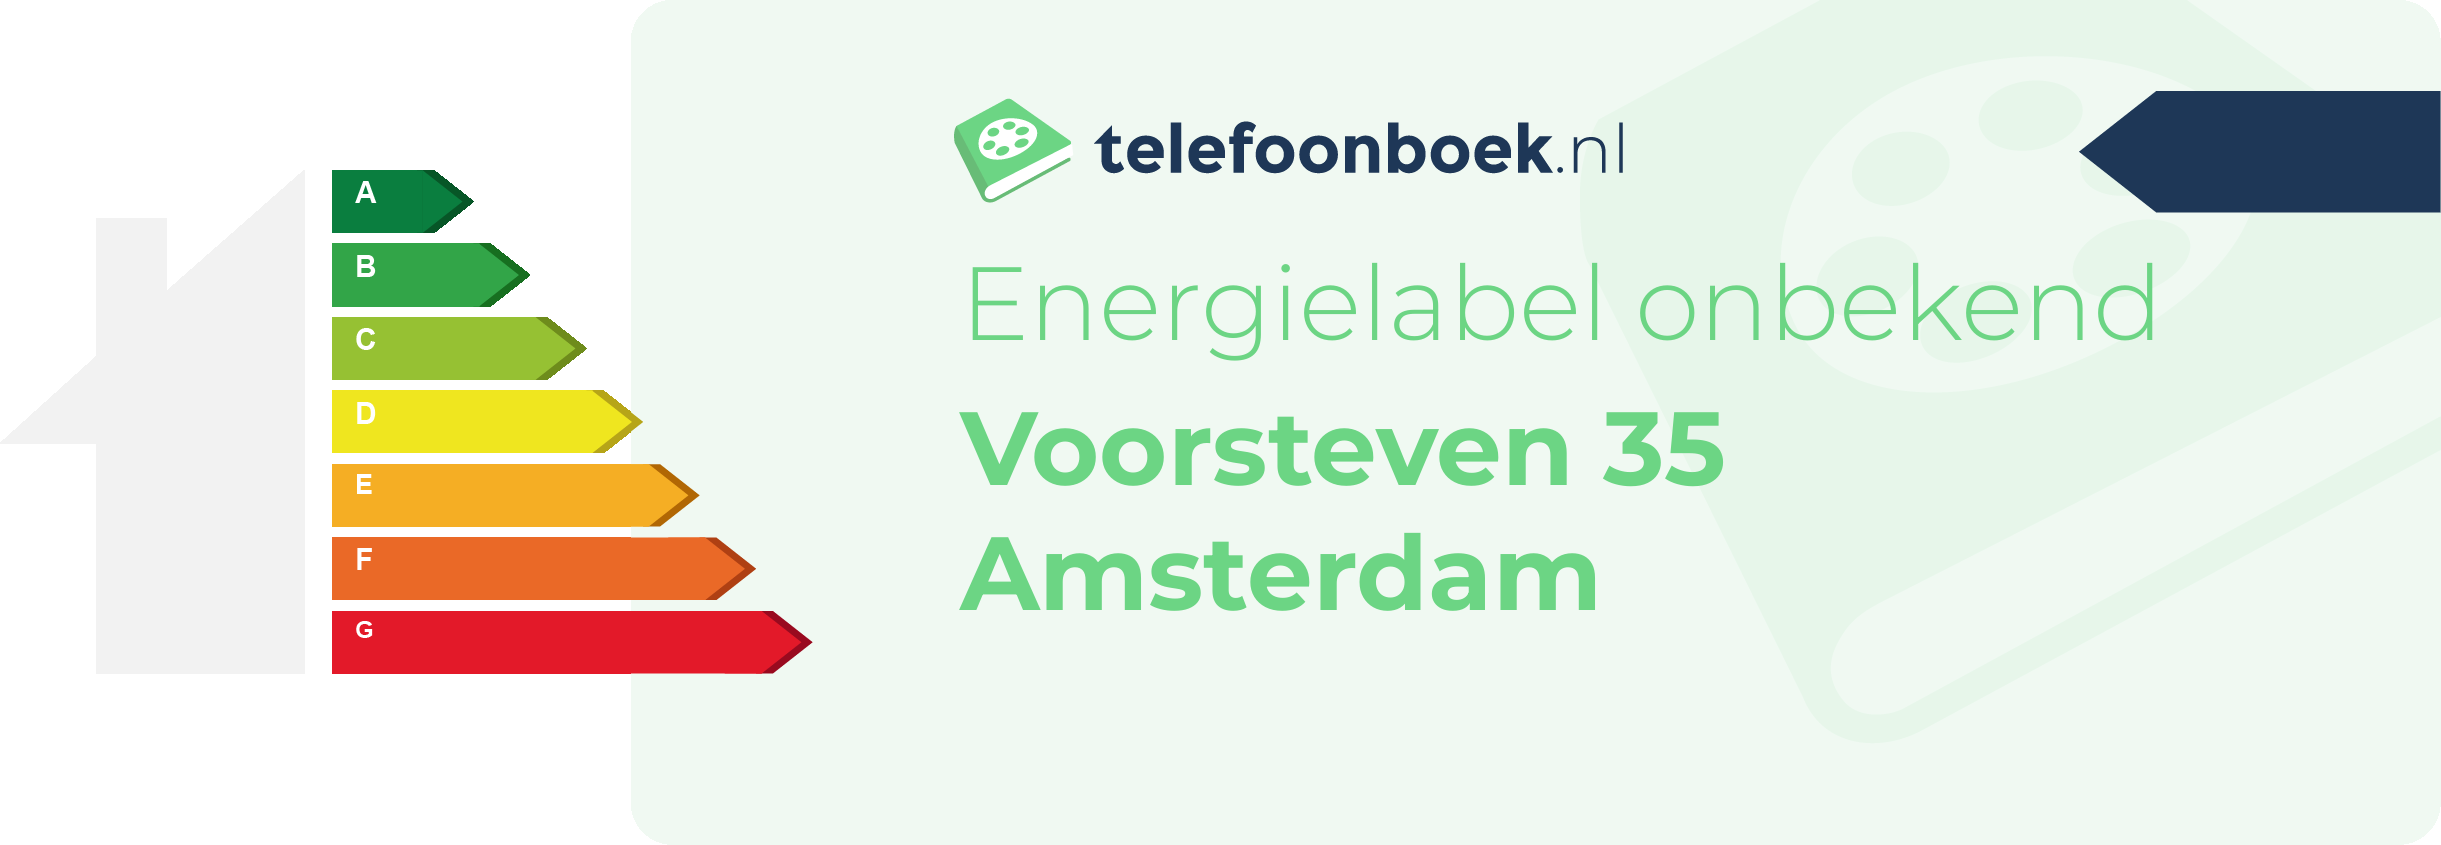 Energielabel Voorsteven 35 Amsterdam